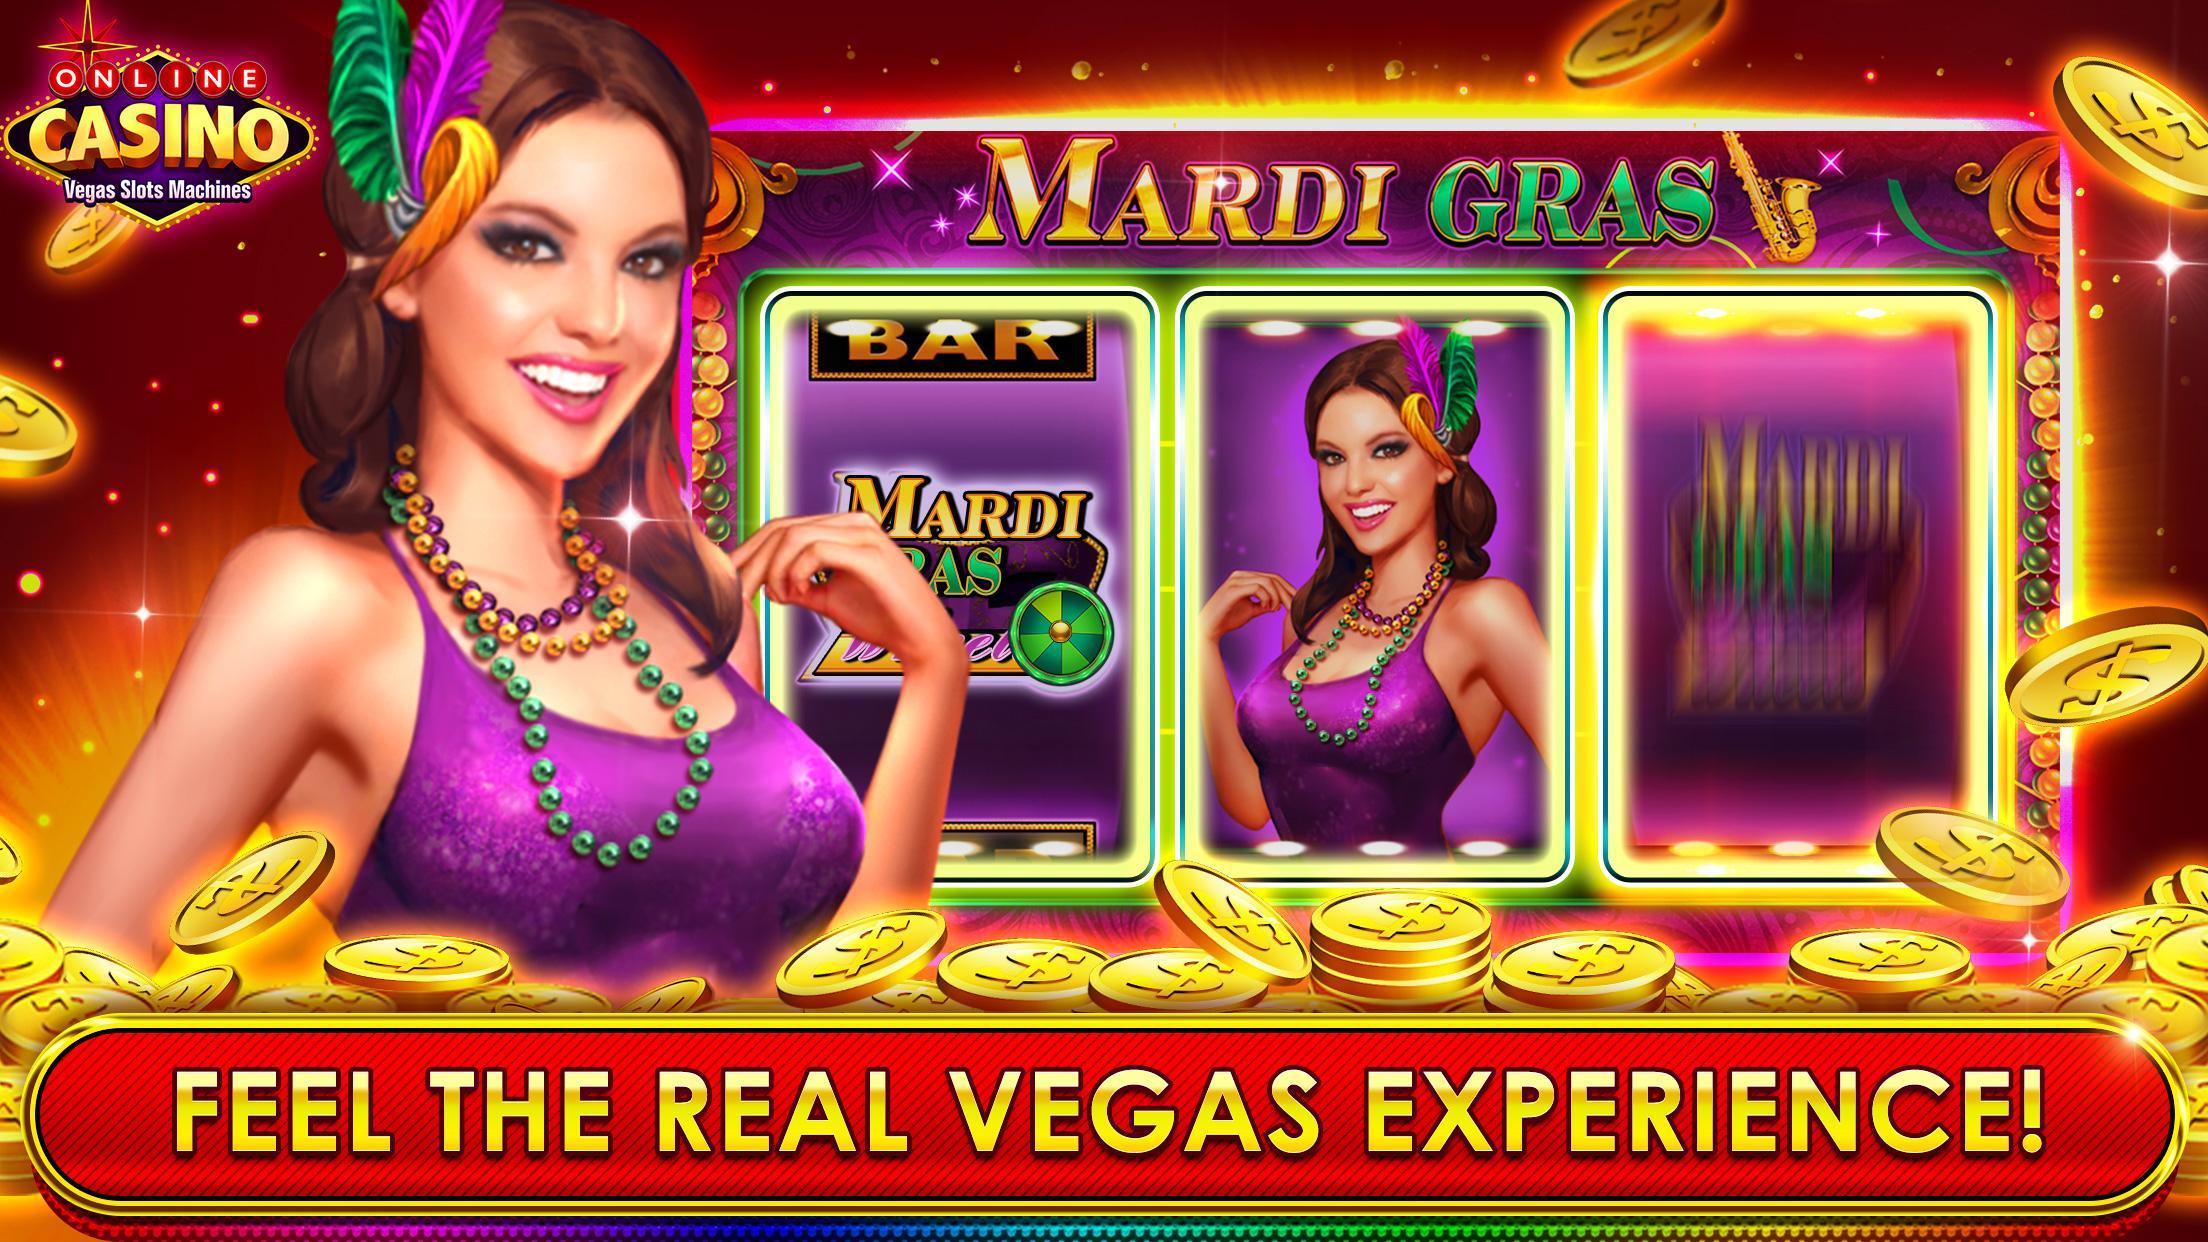 Online Casino Vegas Slots Machines 5.2.0 Screenshot 2